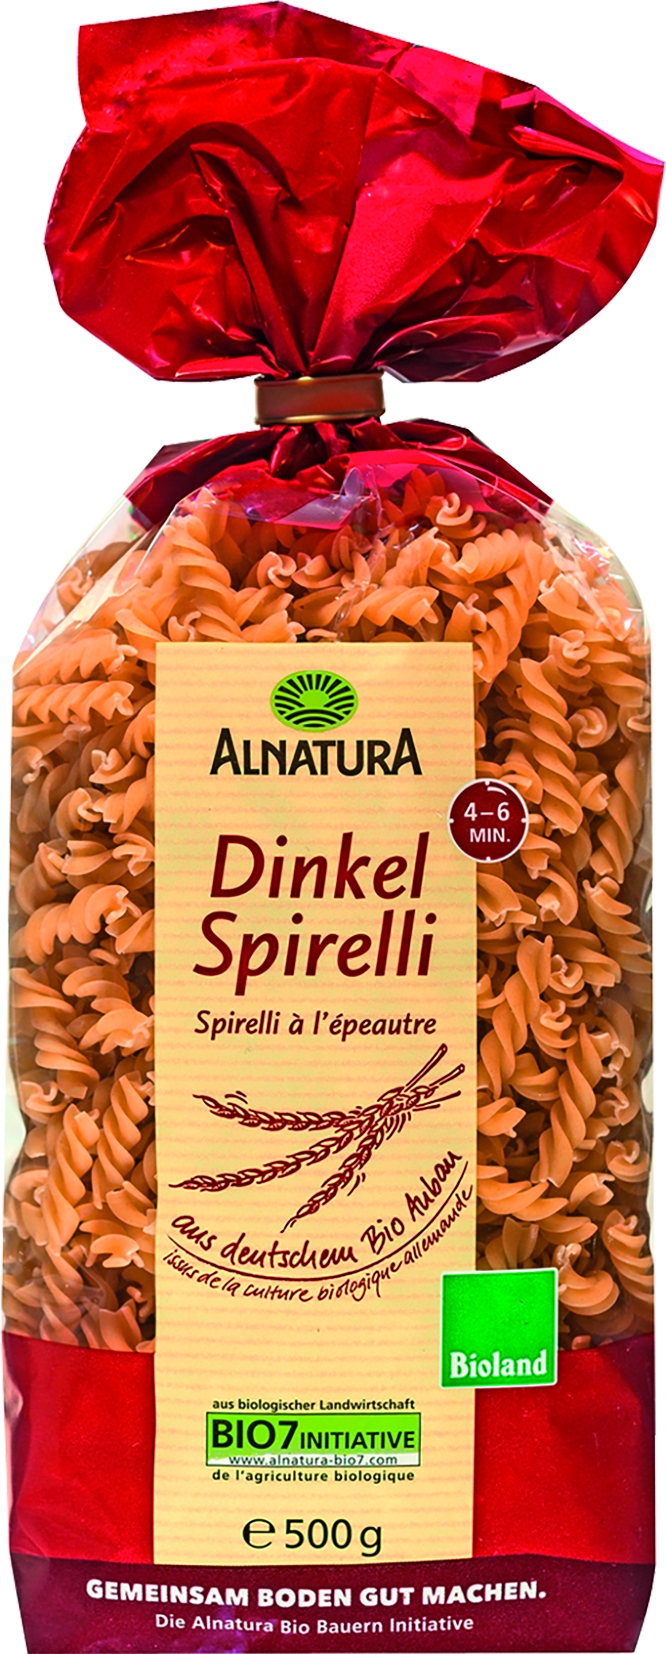 Dinkel Spirelli   